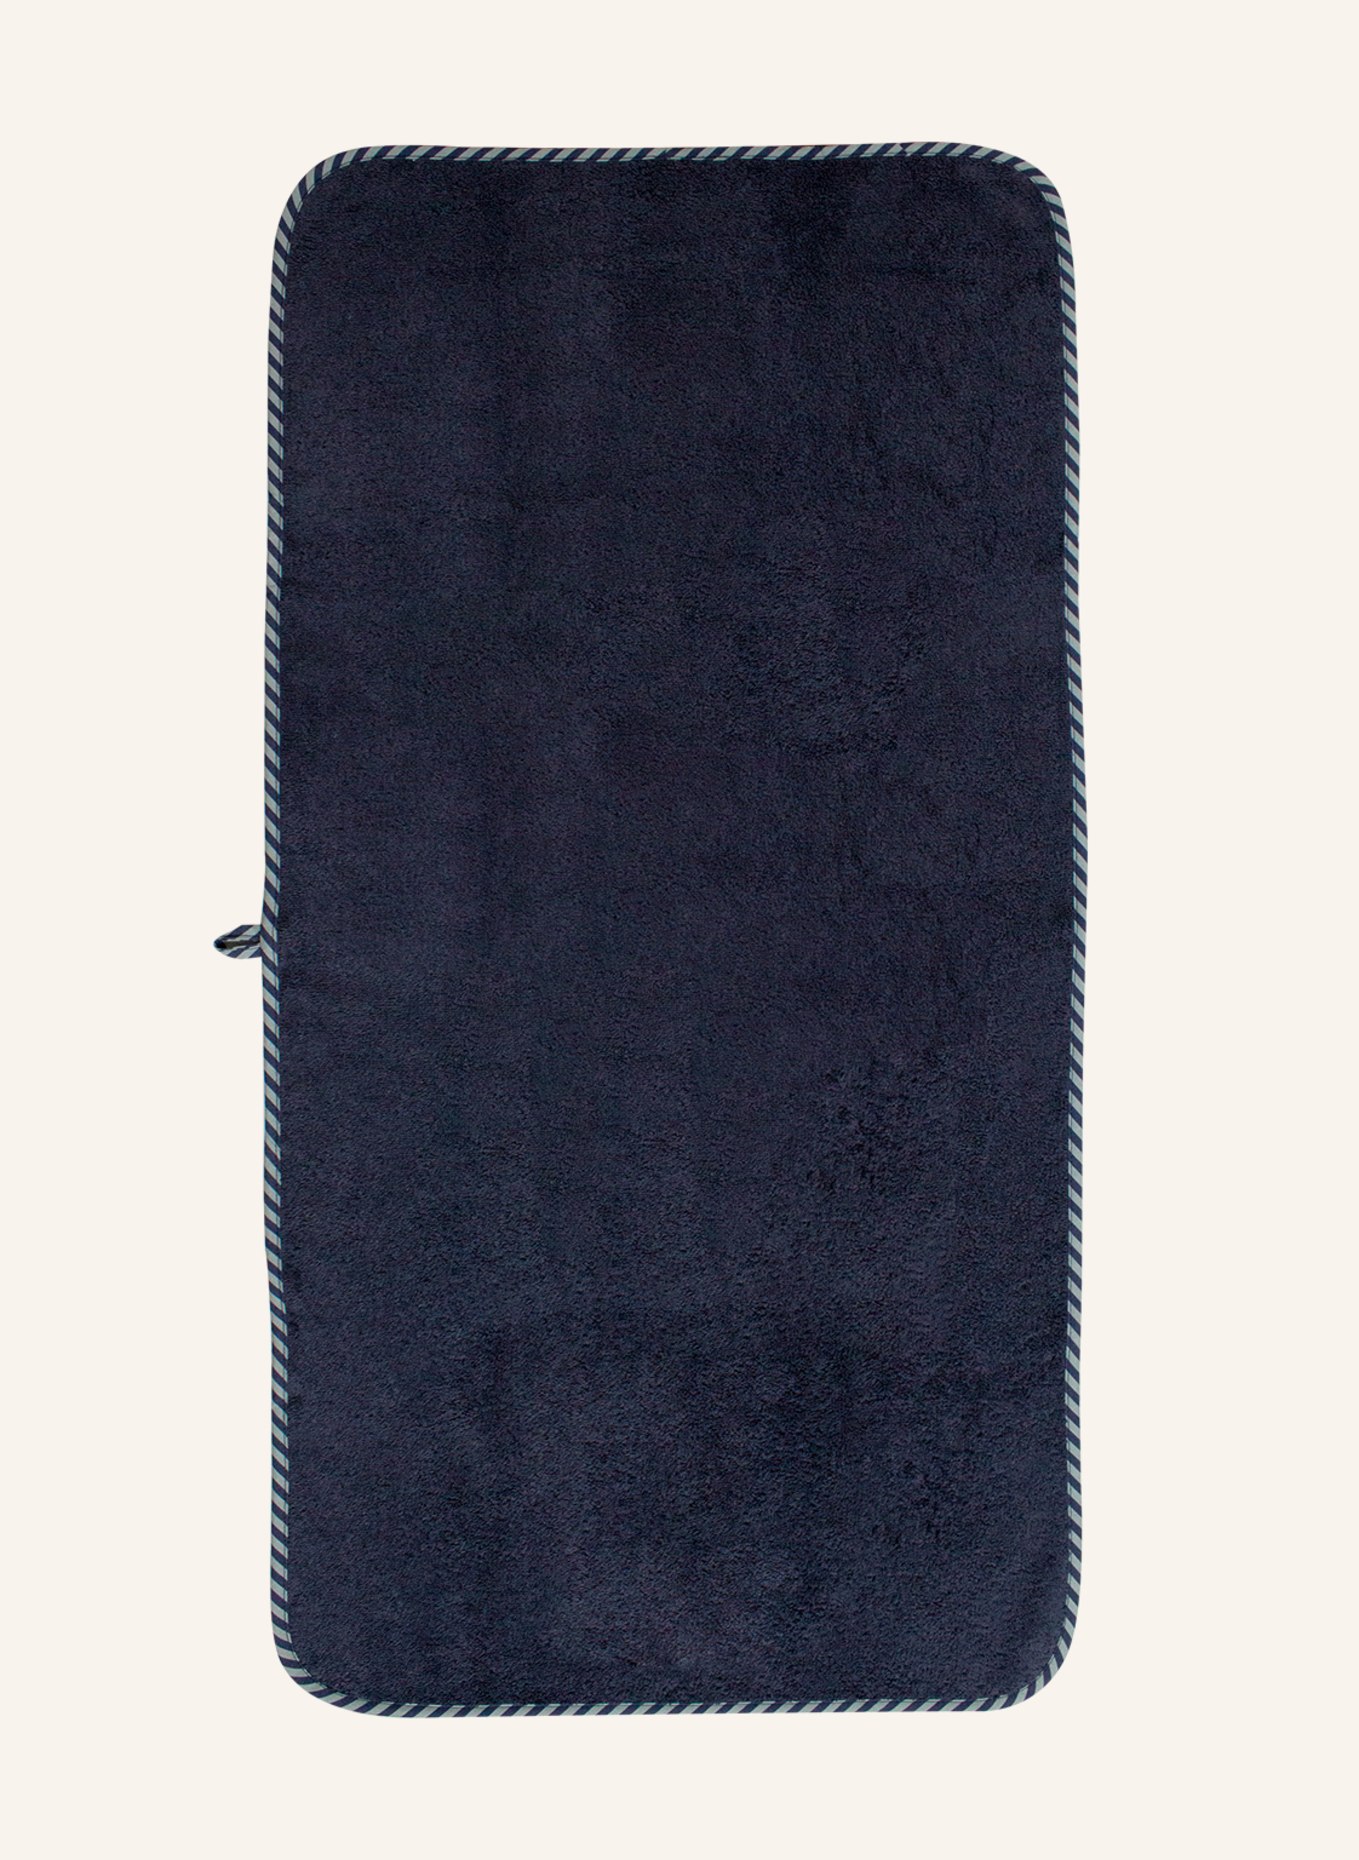 KATHA Covers Handtuch HOLSTENTOR, Farbe: BLAU (Bild 2)